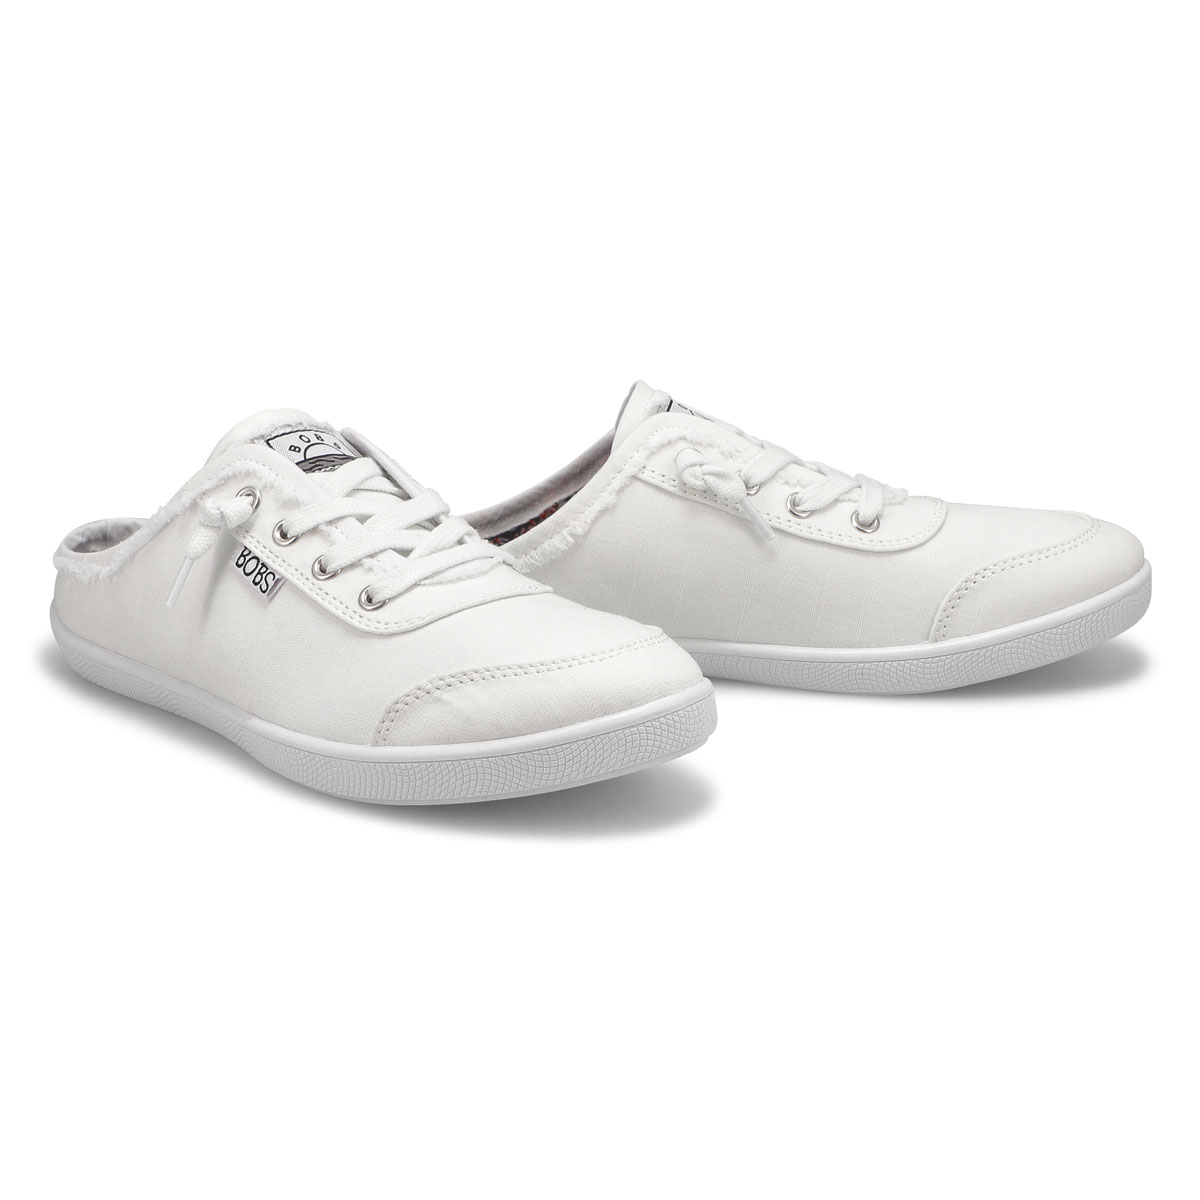 Women's Bobs B Cute Slip On Sneaker - White